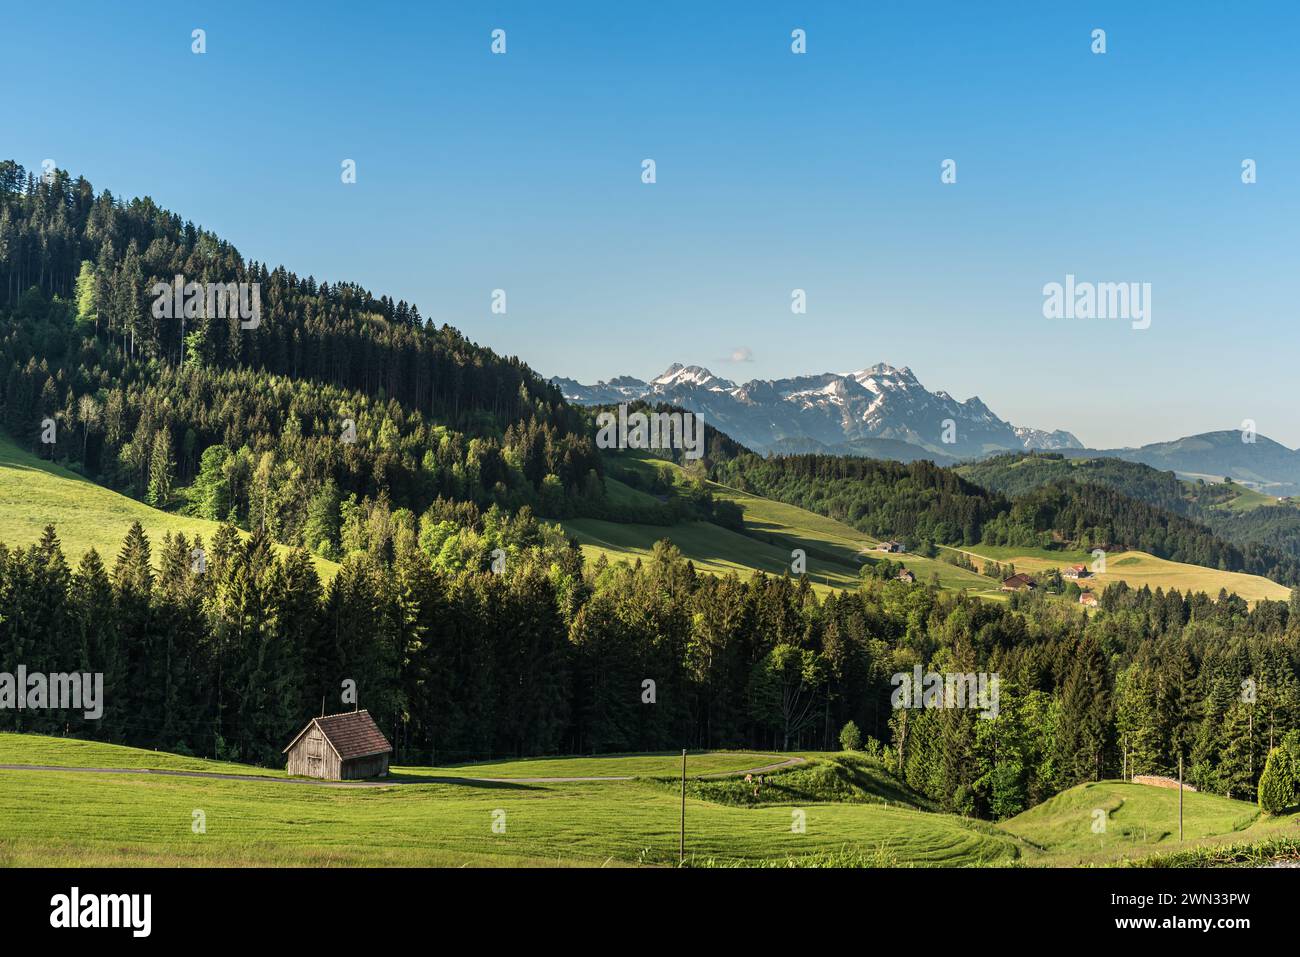 Landscape in the Appenzellerland, view to the Alpstein mountains with Saentis, Canton Appenzell Ausserrhoden, Switzerland Stock Photo